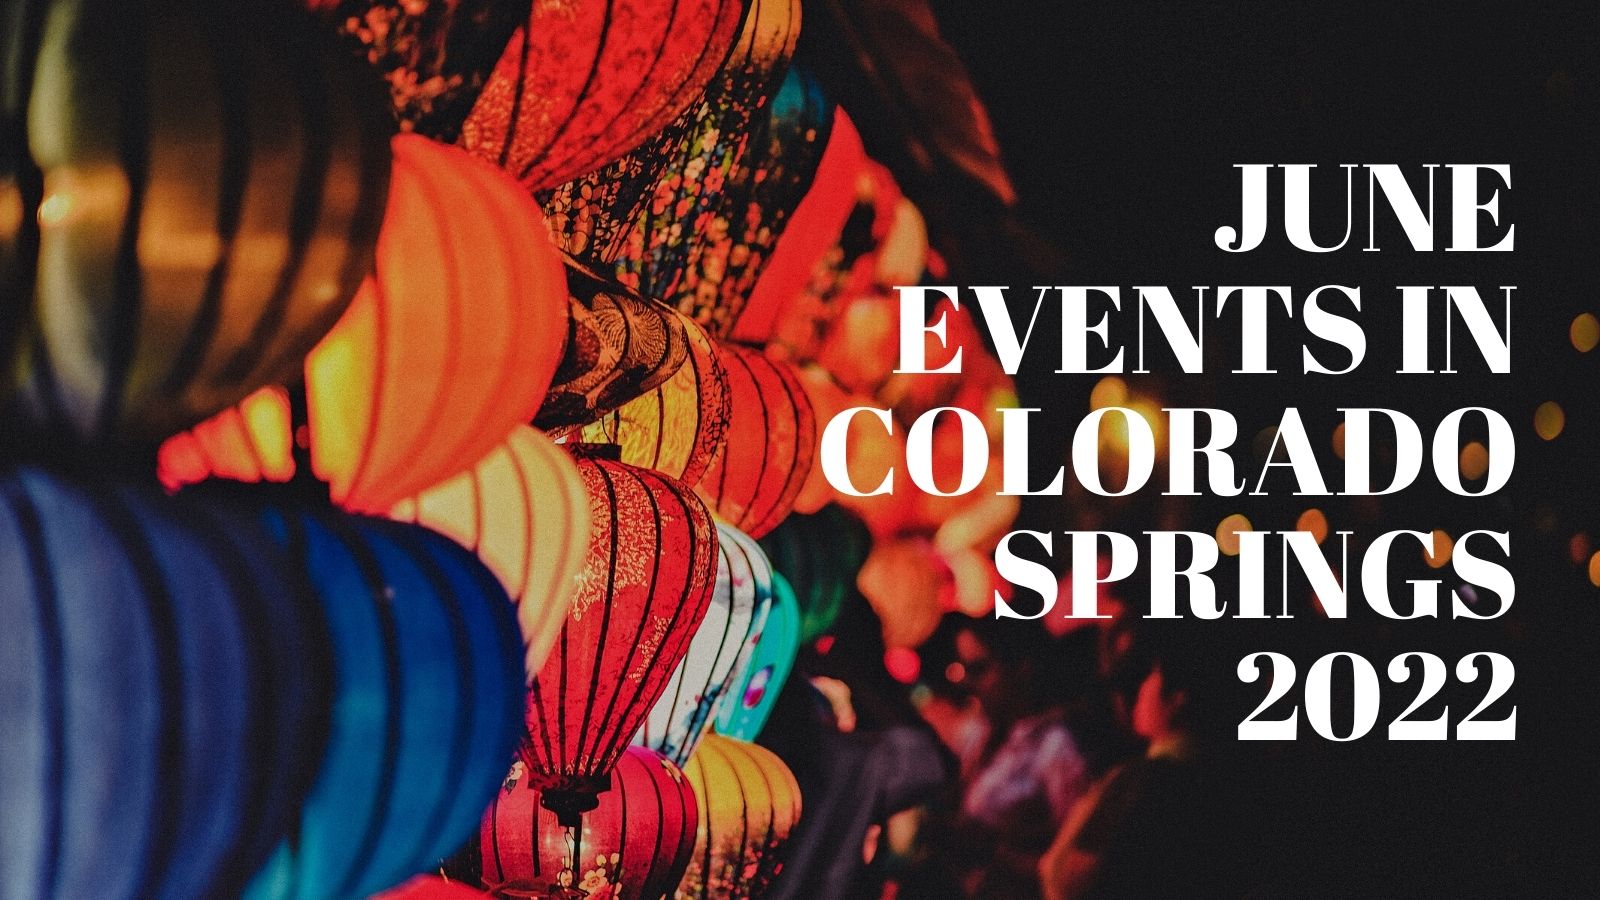 June Events in Colorado Springs 2022